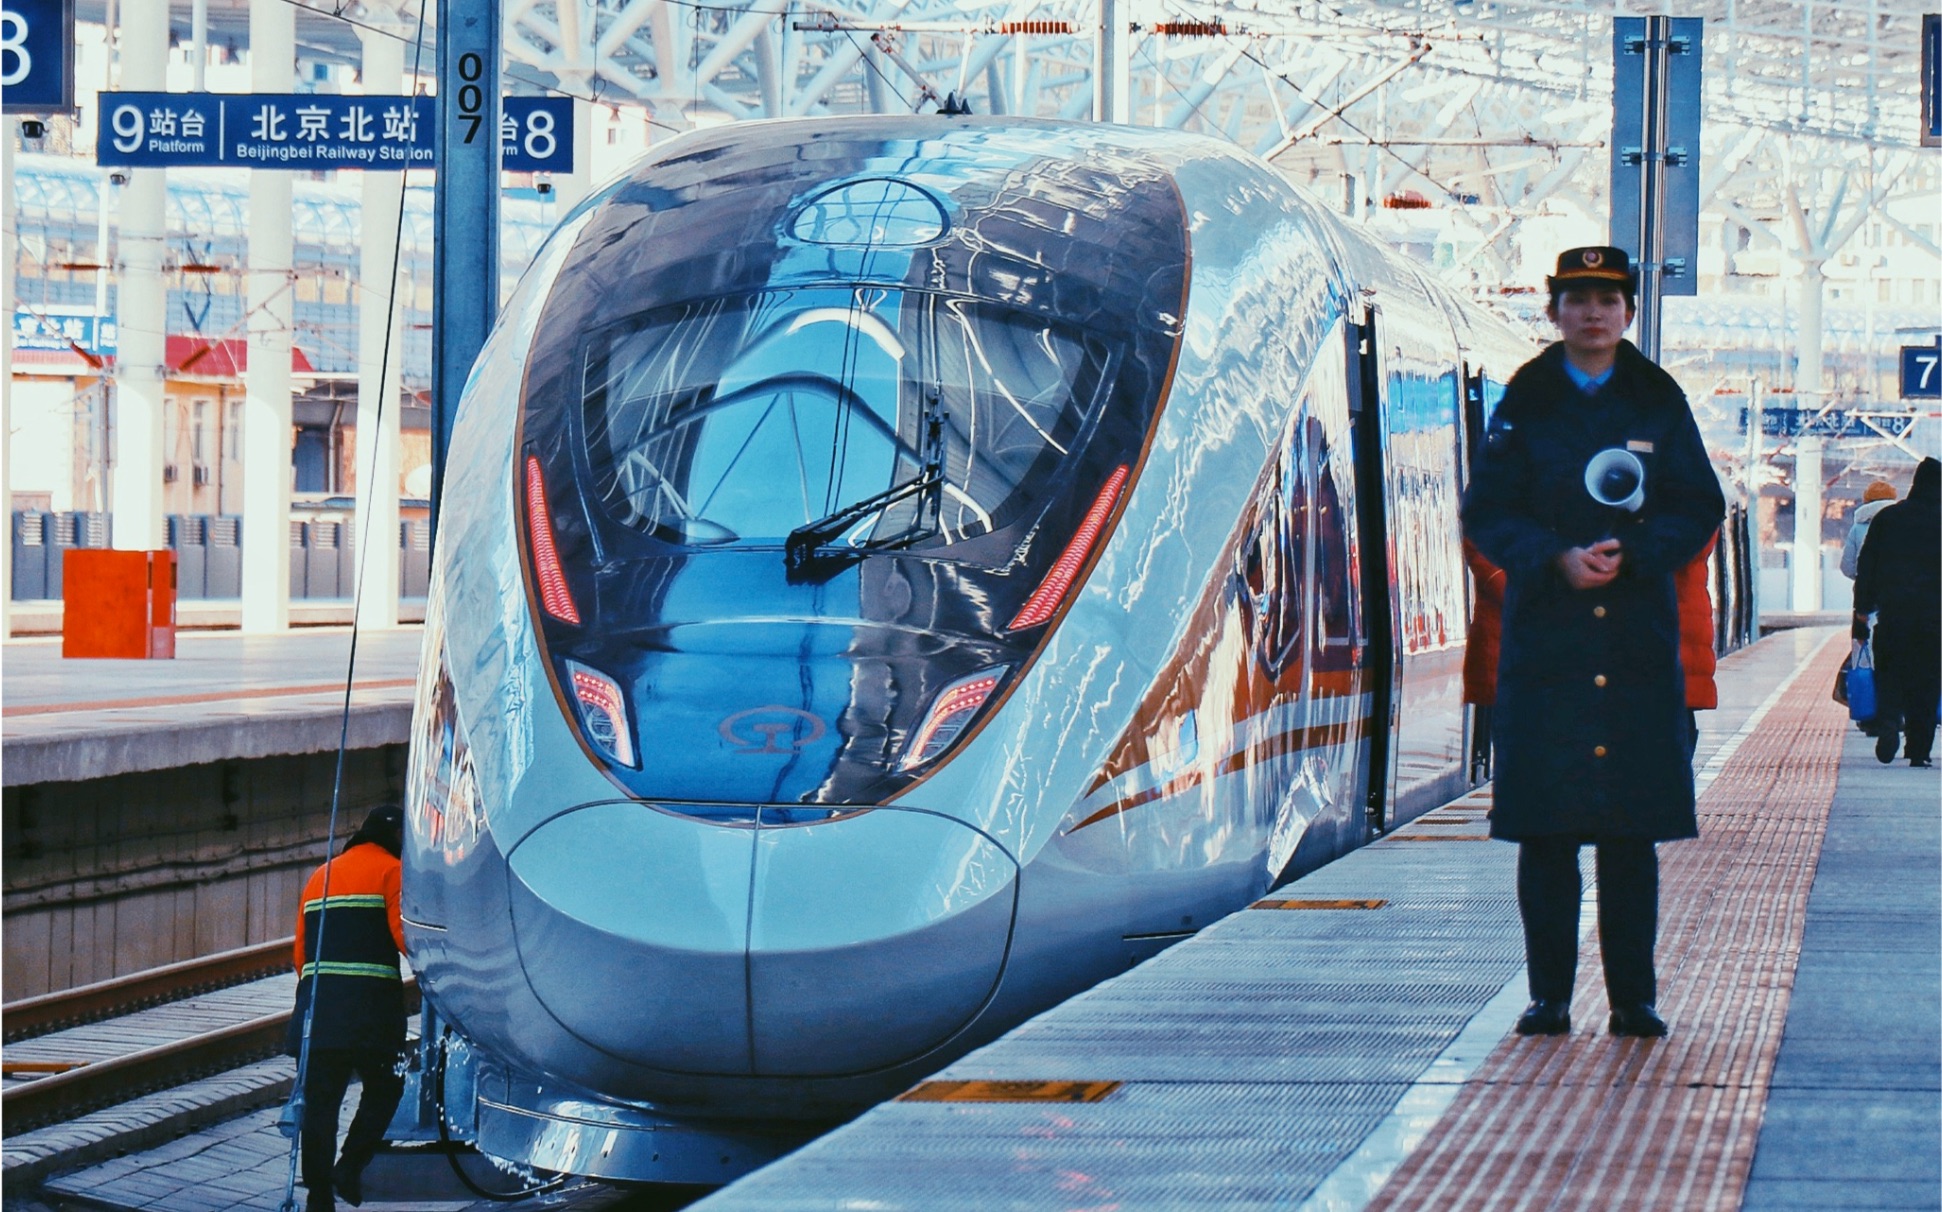 西门子的电机声简直不要太好听 京张高铁CR400-BF-C八达岭长城站起步加速出站